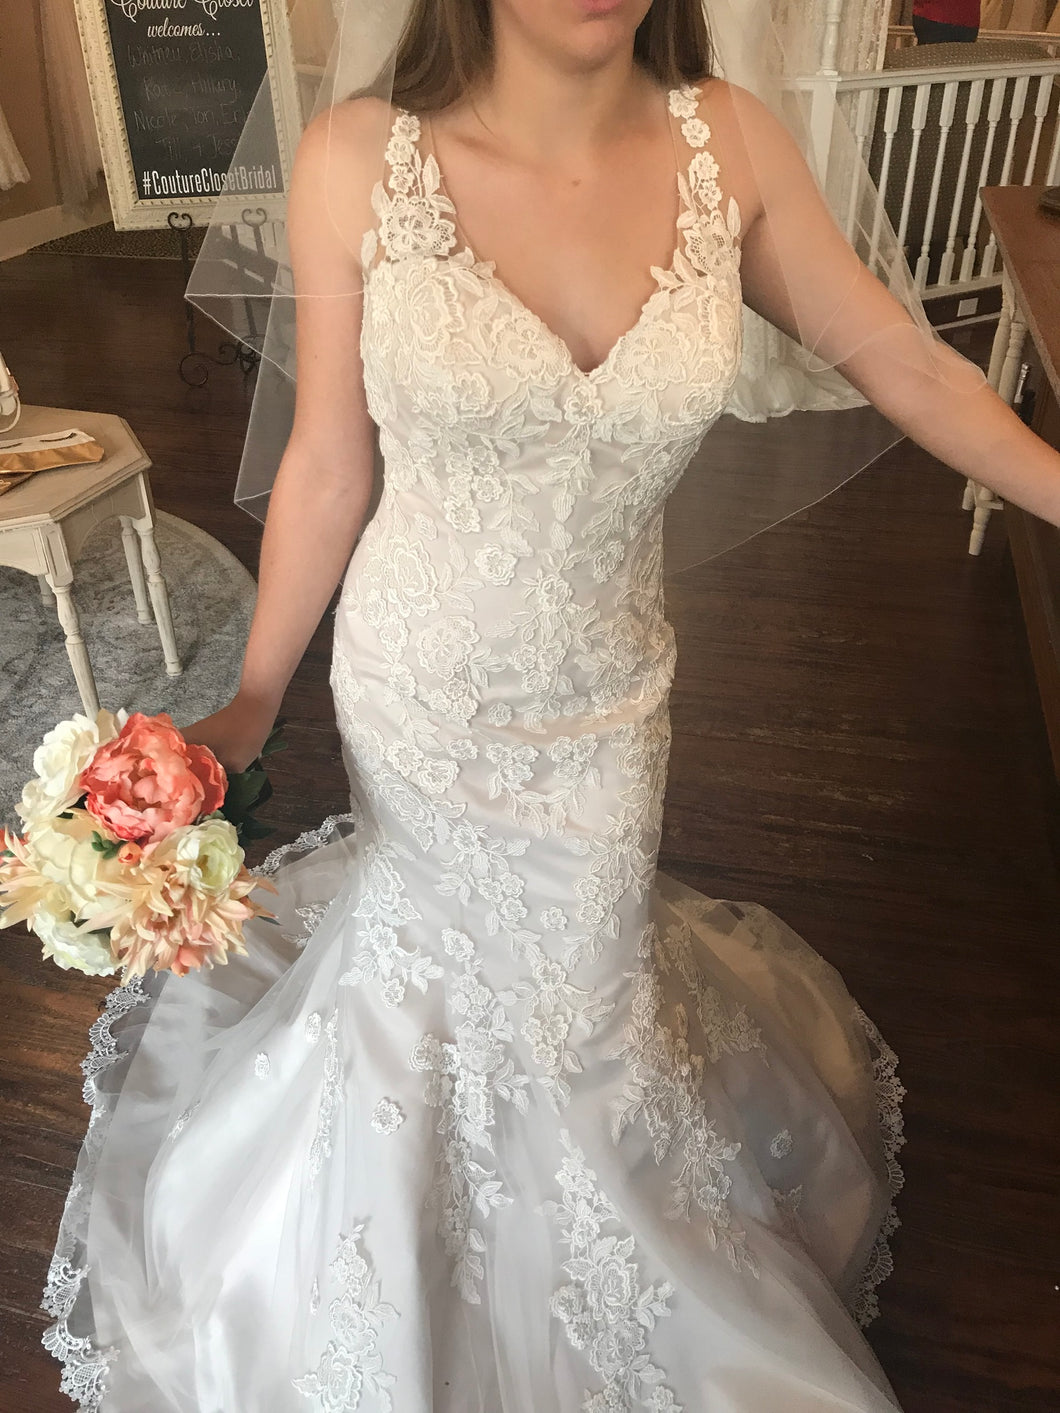 Lillian West '6486' wedding dress size-06 NEW